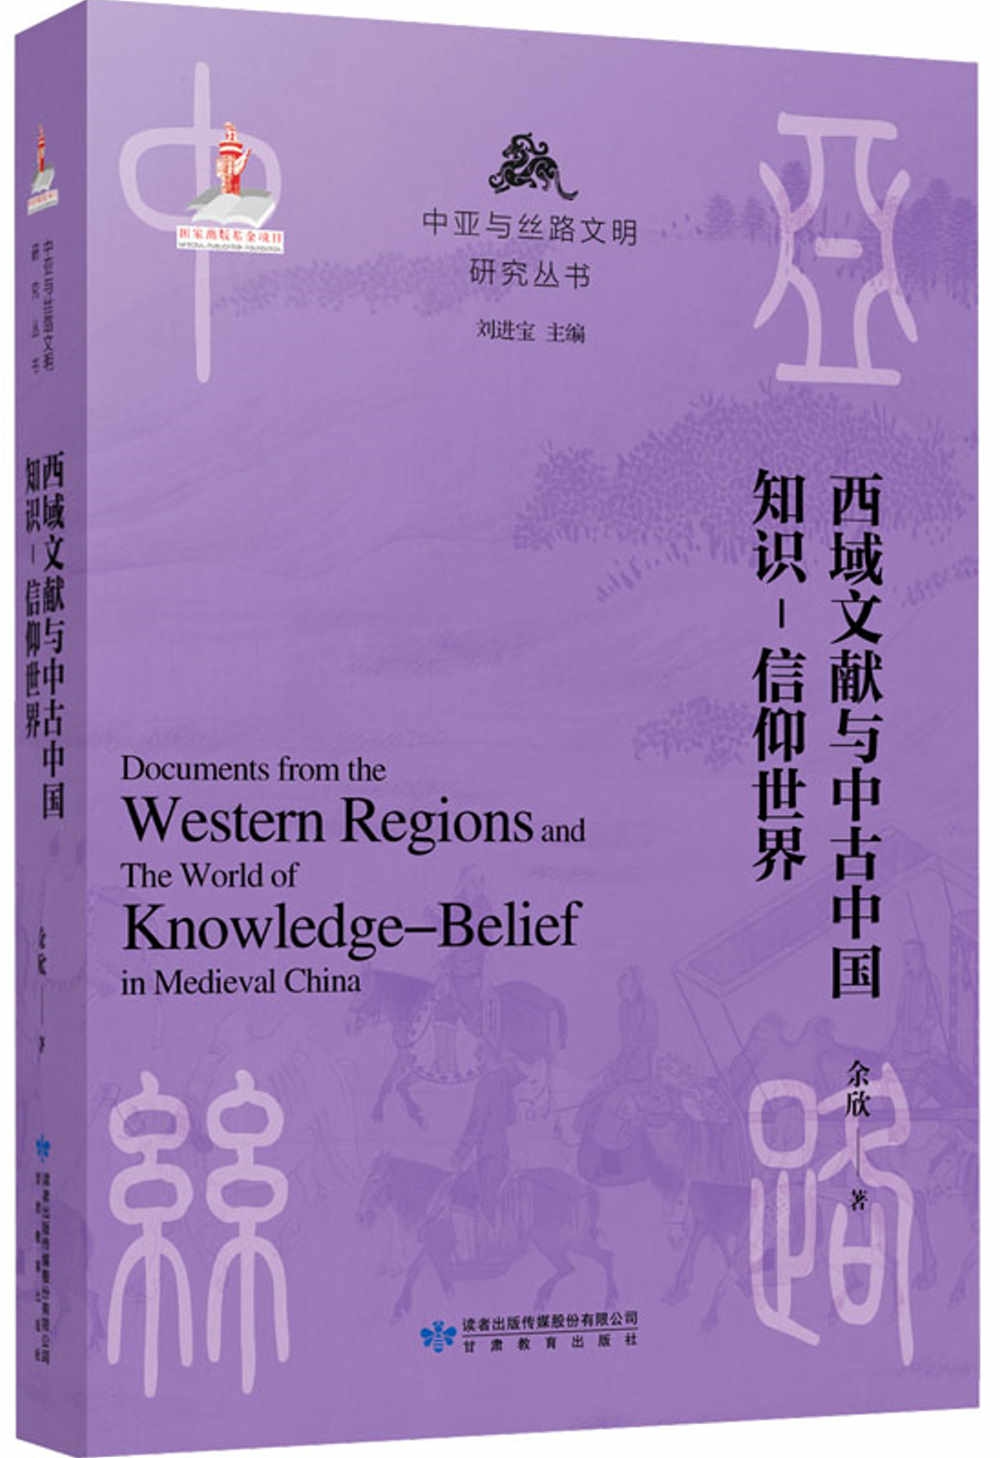 西域文獻與中古中國知識-信仰世界